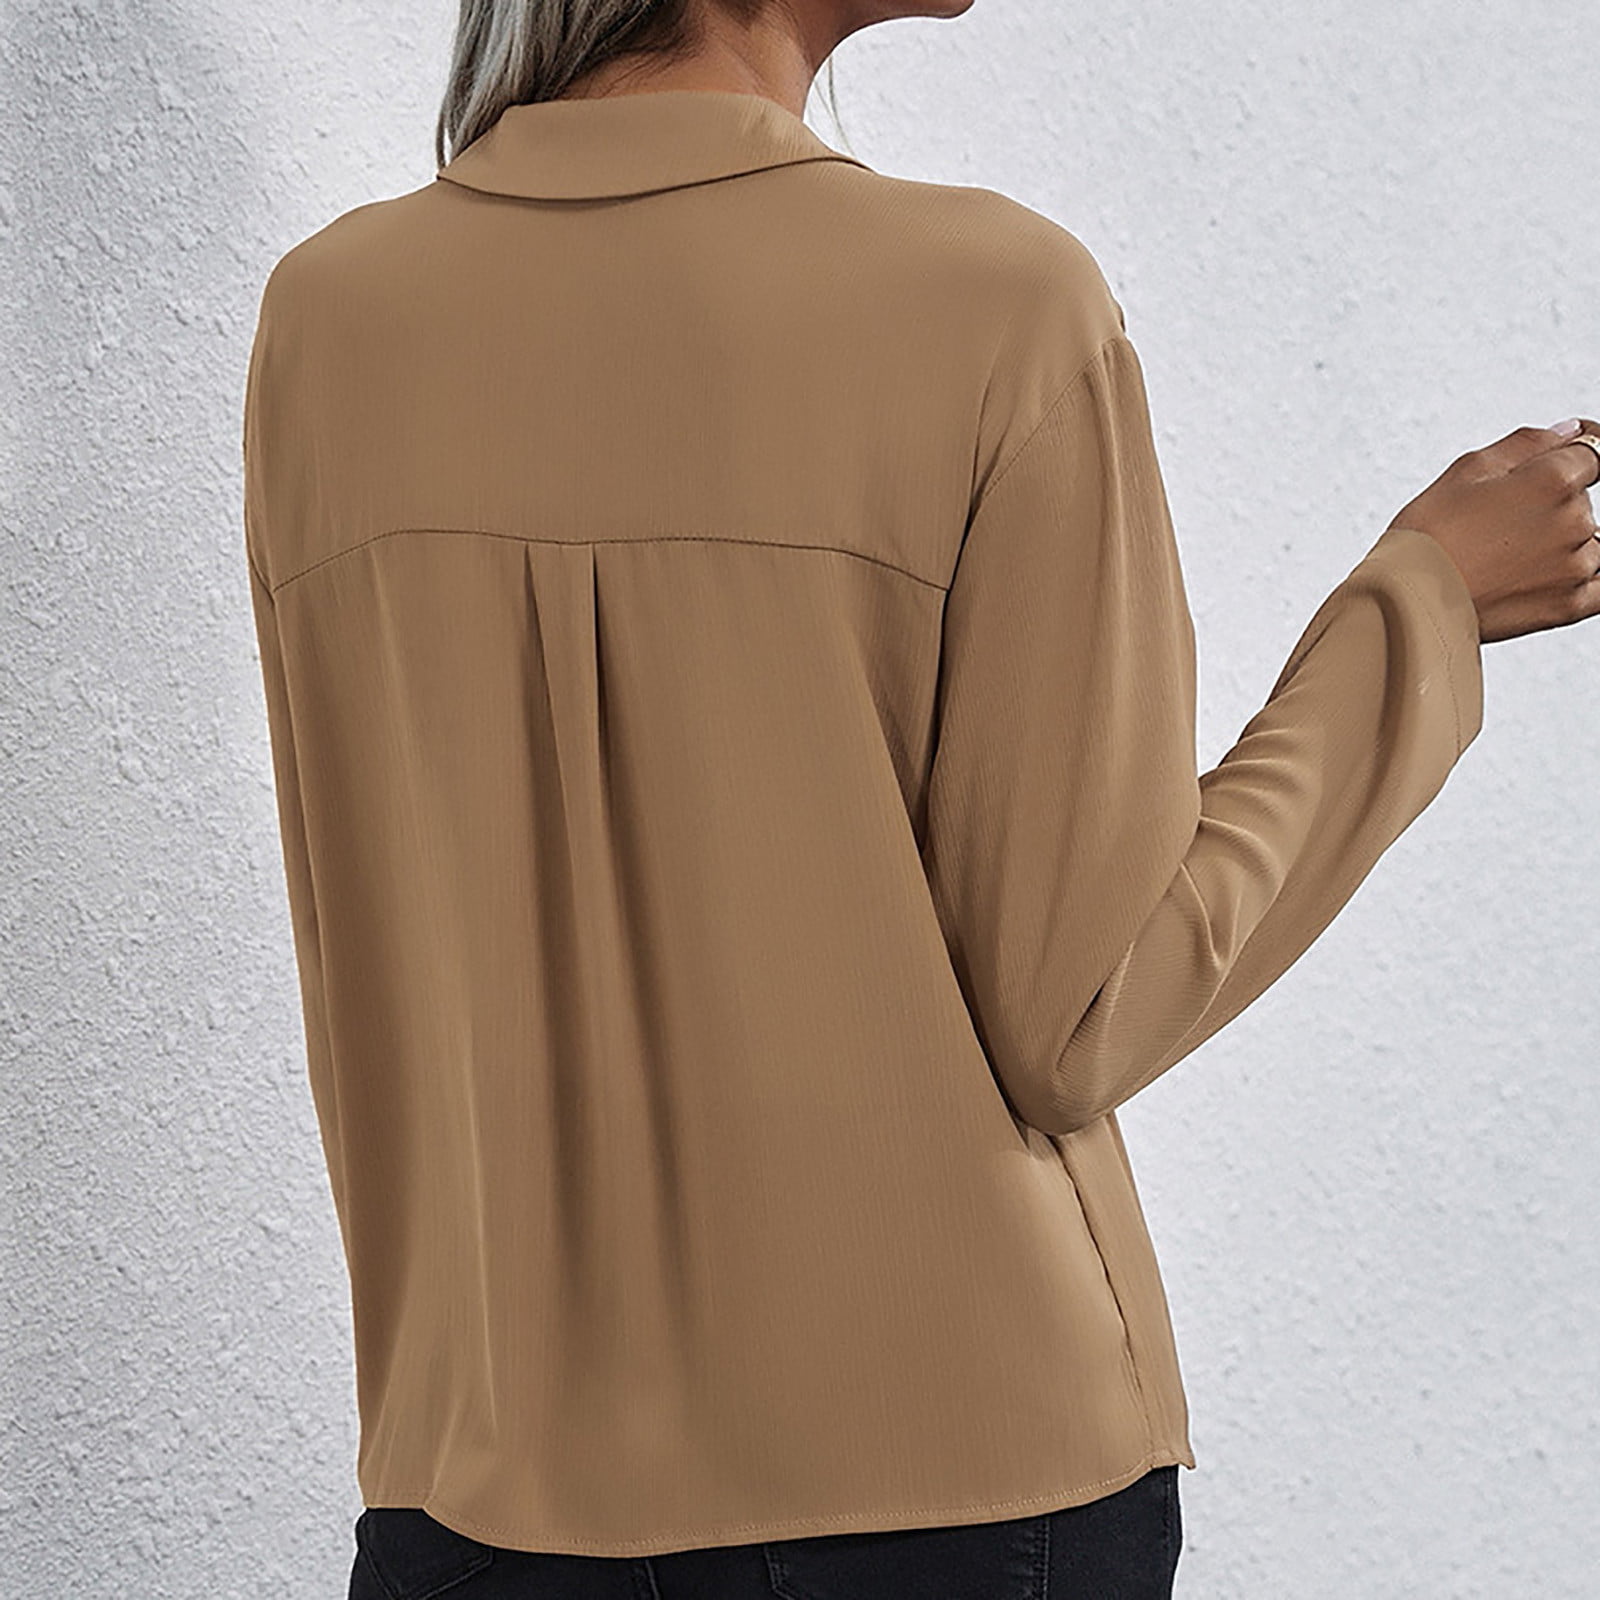 Zodggu Long Sleeve Solid T Shirt for Women Tops Women Autumn